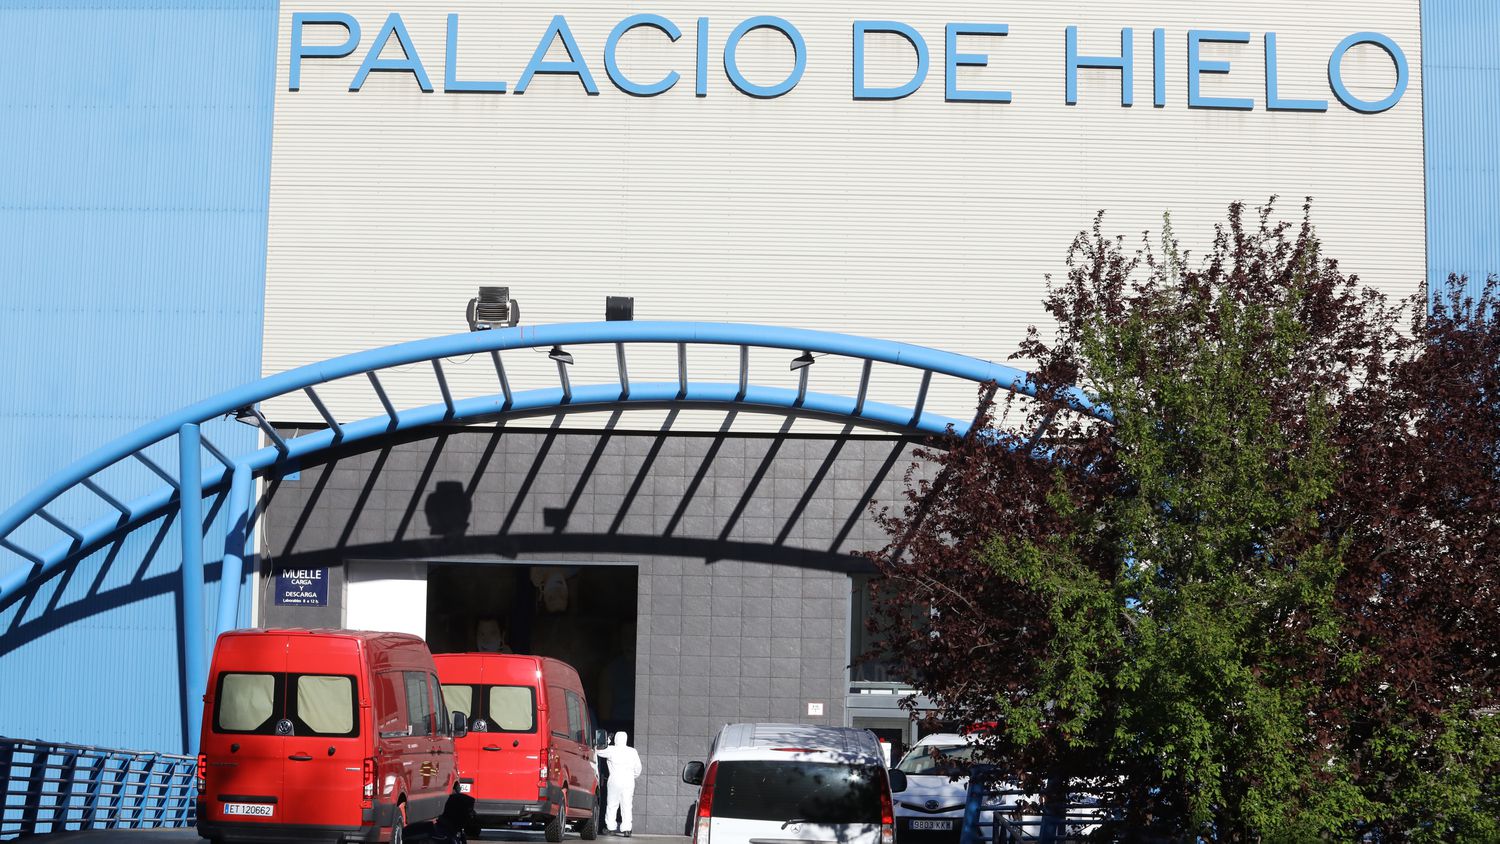 Le unitá militari d'emergenza (UMI) trasladano corpi al "Palacio de Hielo", una pista di pattinaggio e centro commerciale di Madrid. (